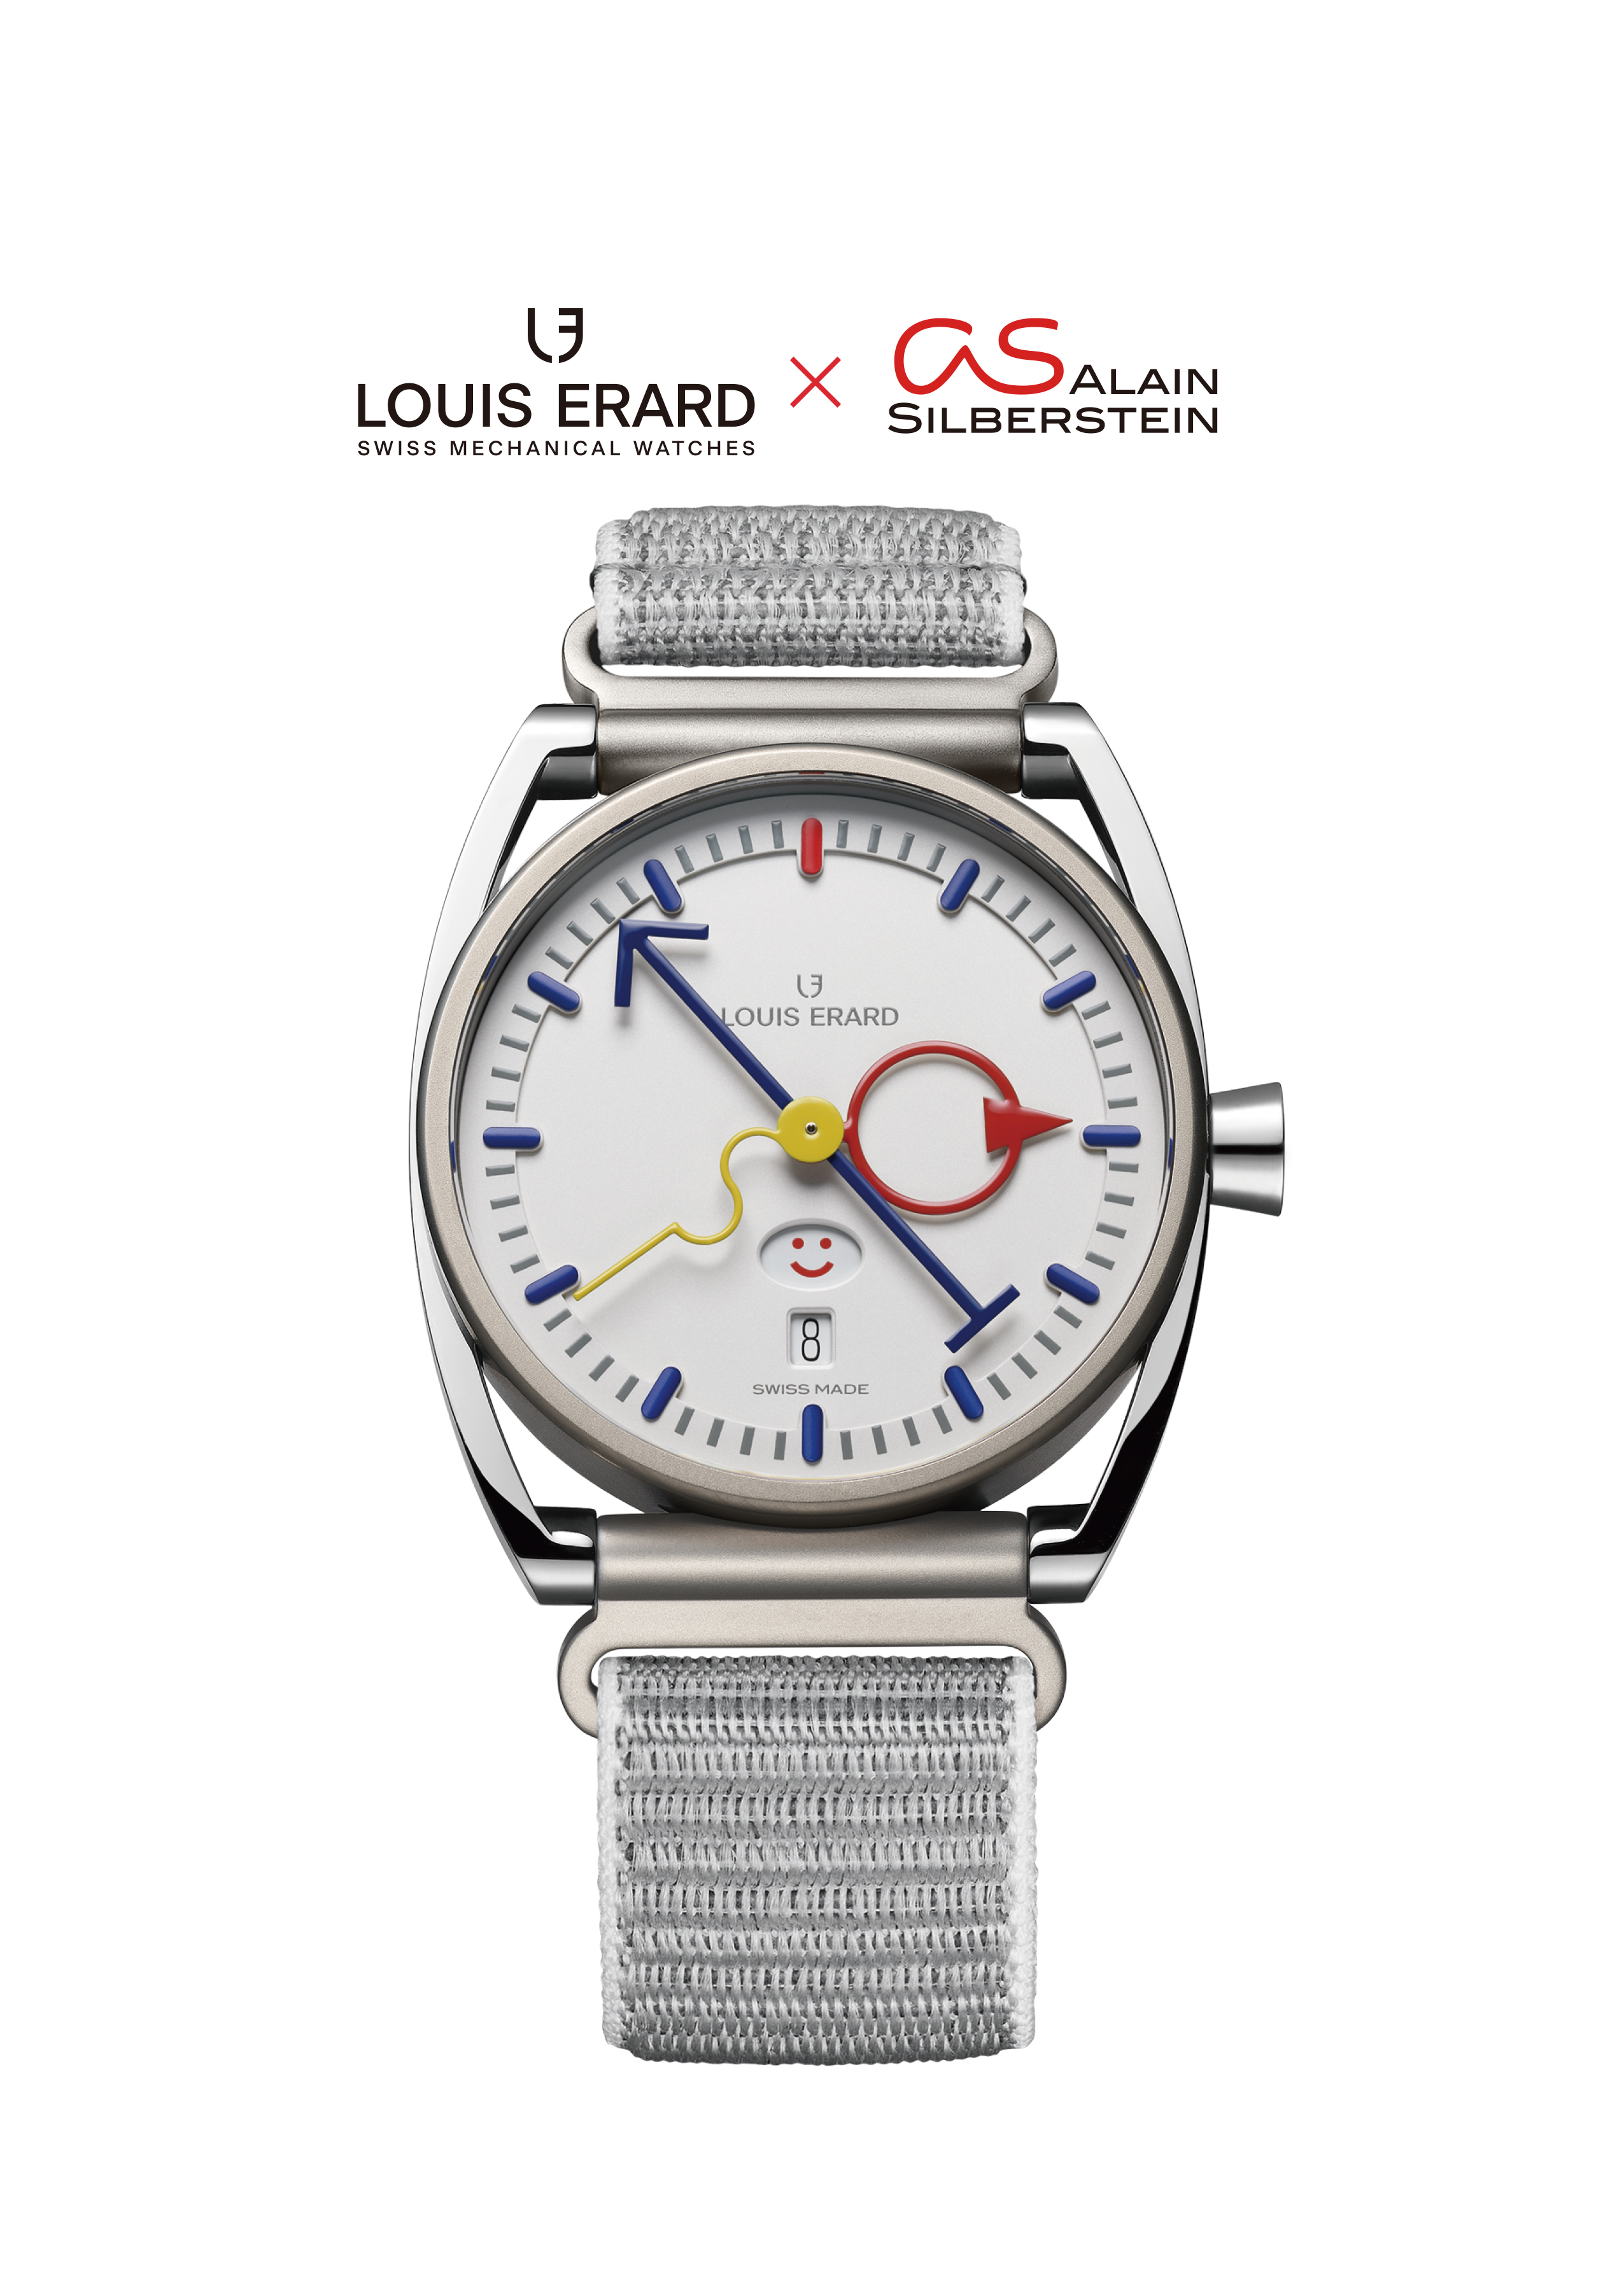 スイス時計ブランド「Louis Erard」がLouis Erard × Alain Silberstein 